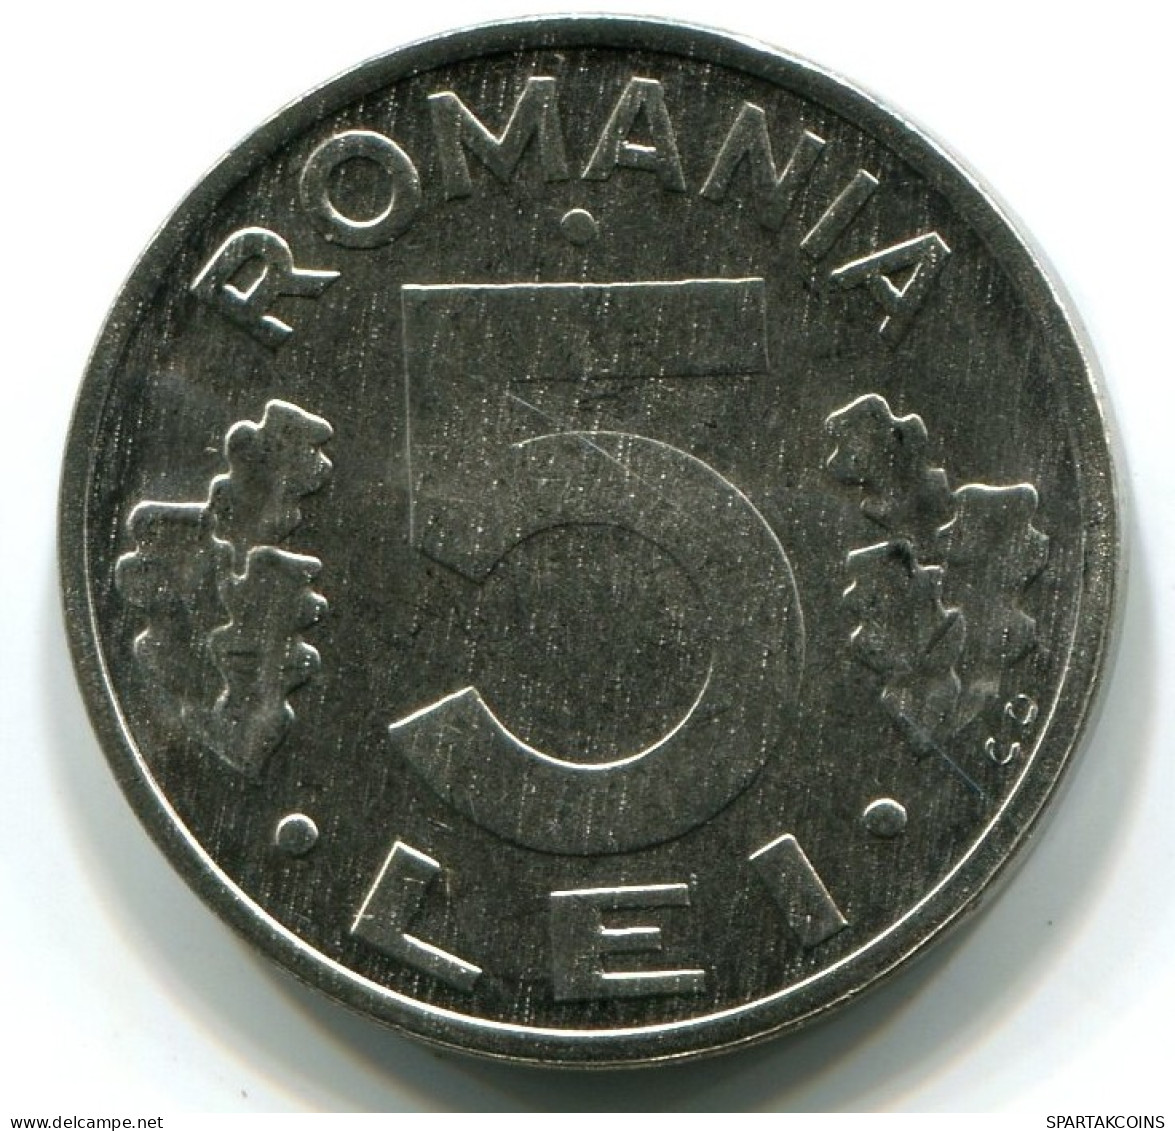 5 LEI 1992 RUMÄNIEN ROMANIA UNC Münze EAGLE COAT OF ARMS #W11207.D.A - Romania